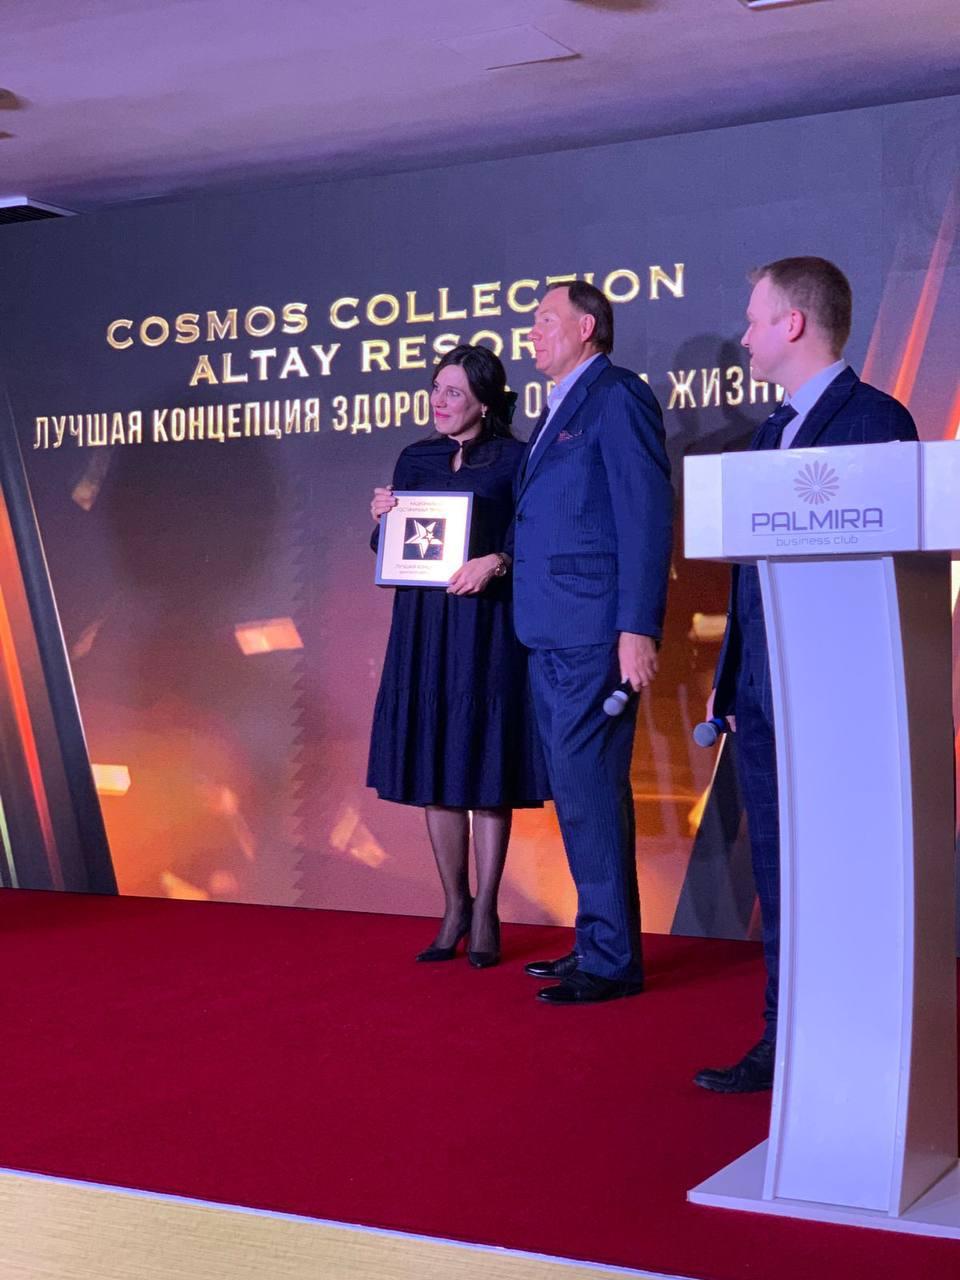 Cosmos Collection Altay Resort выиграл в номинации «Лучшая концепция здорового образа жизни»